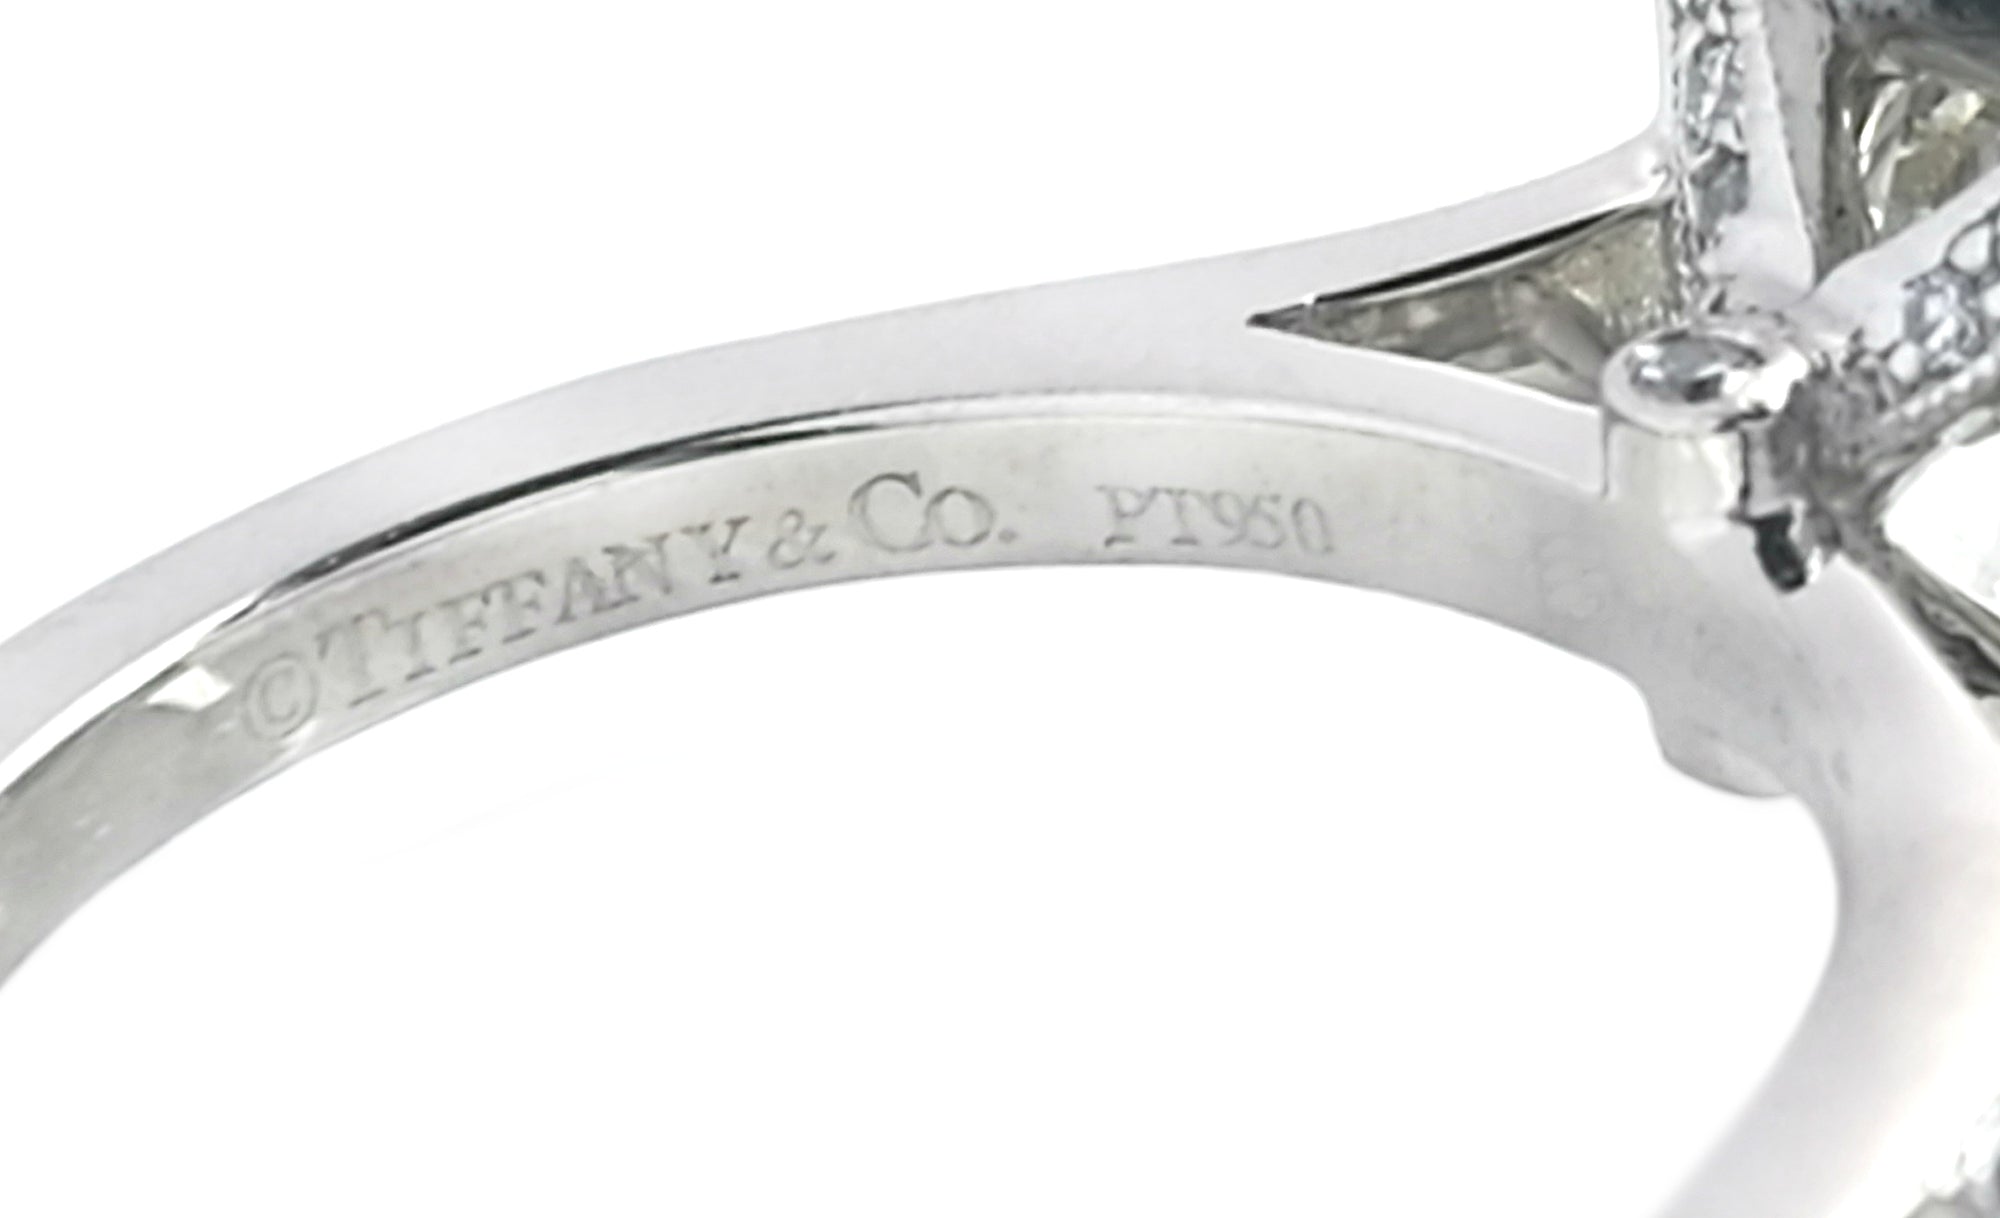 Tiffany & Co. 2.31tcw I/VVS2 'Legacy' Diamond Engagement Ring